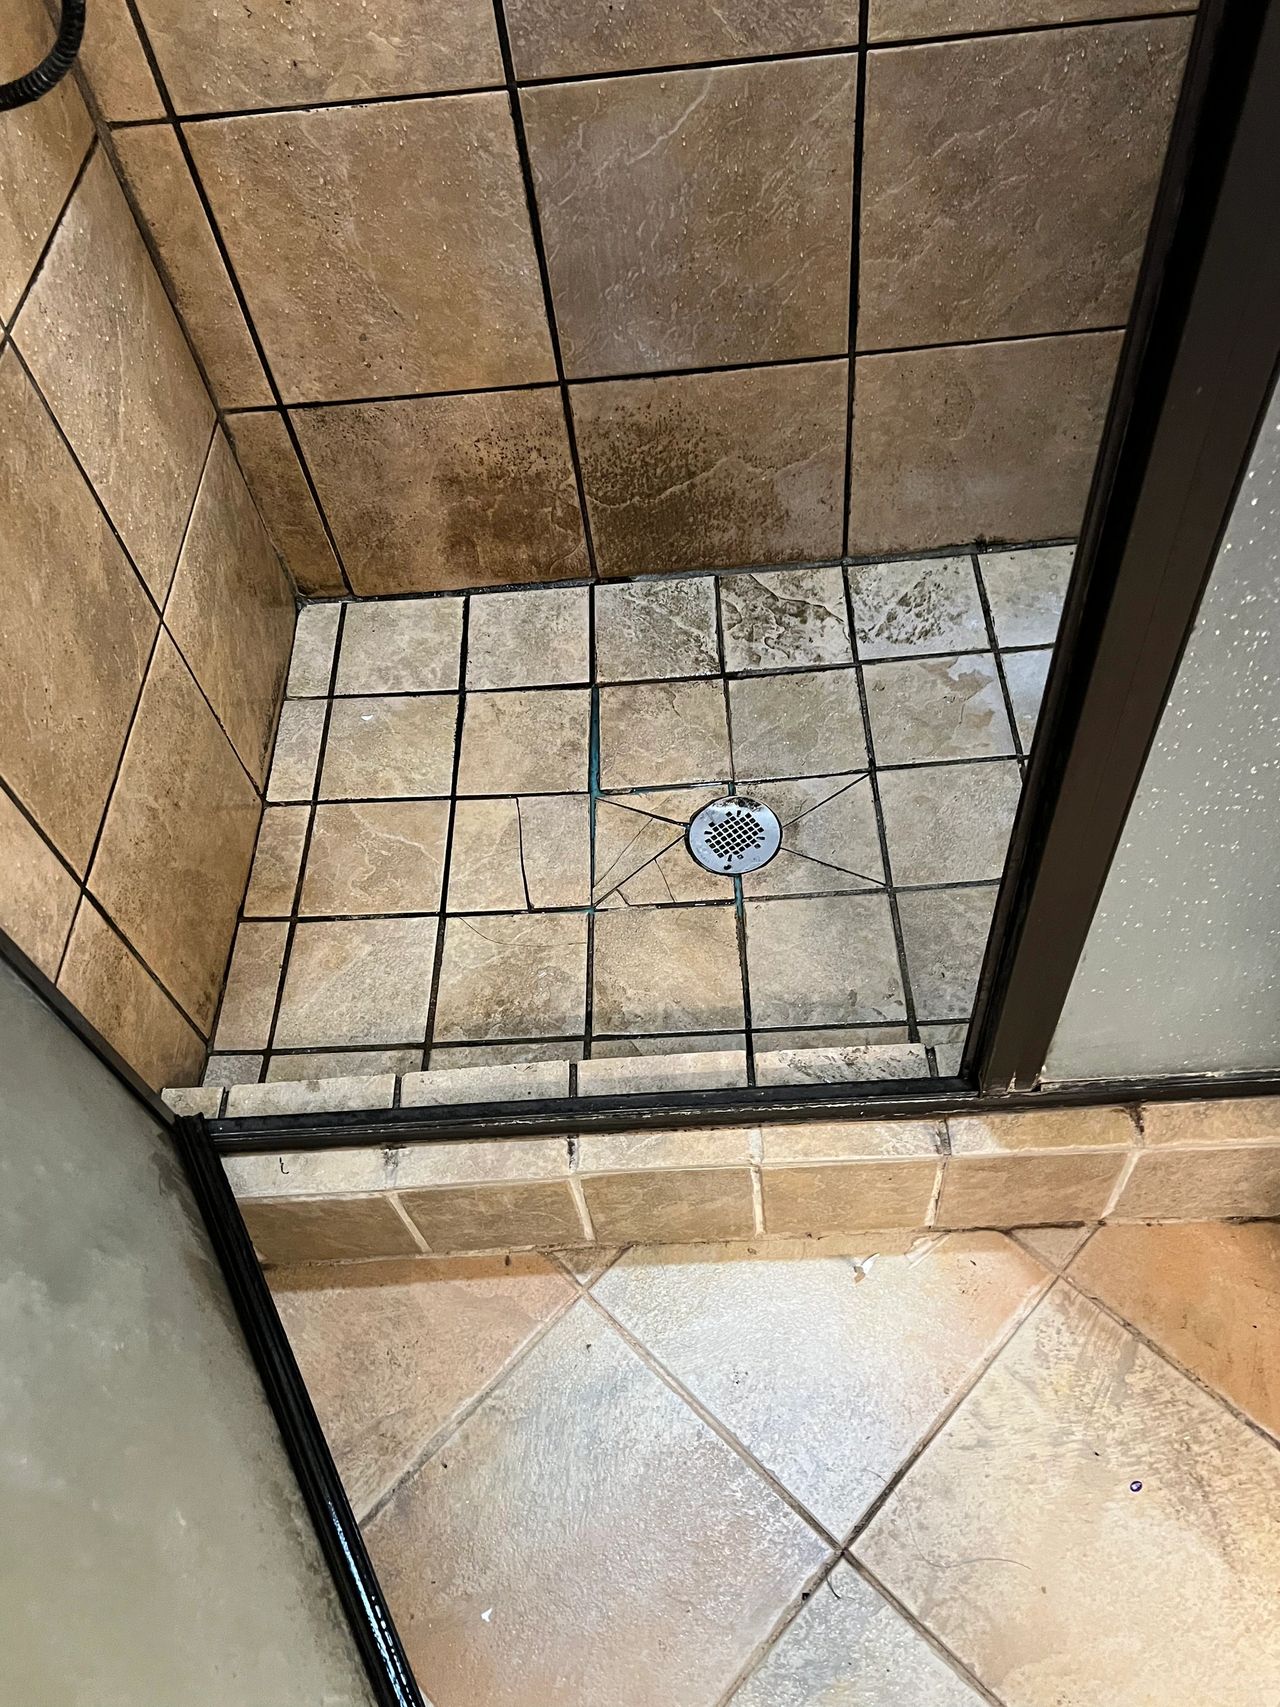 Leaking shower pan